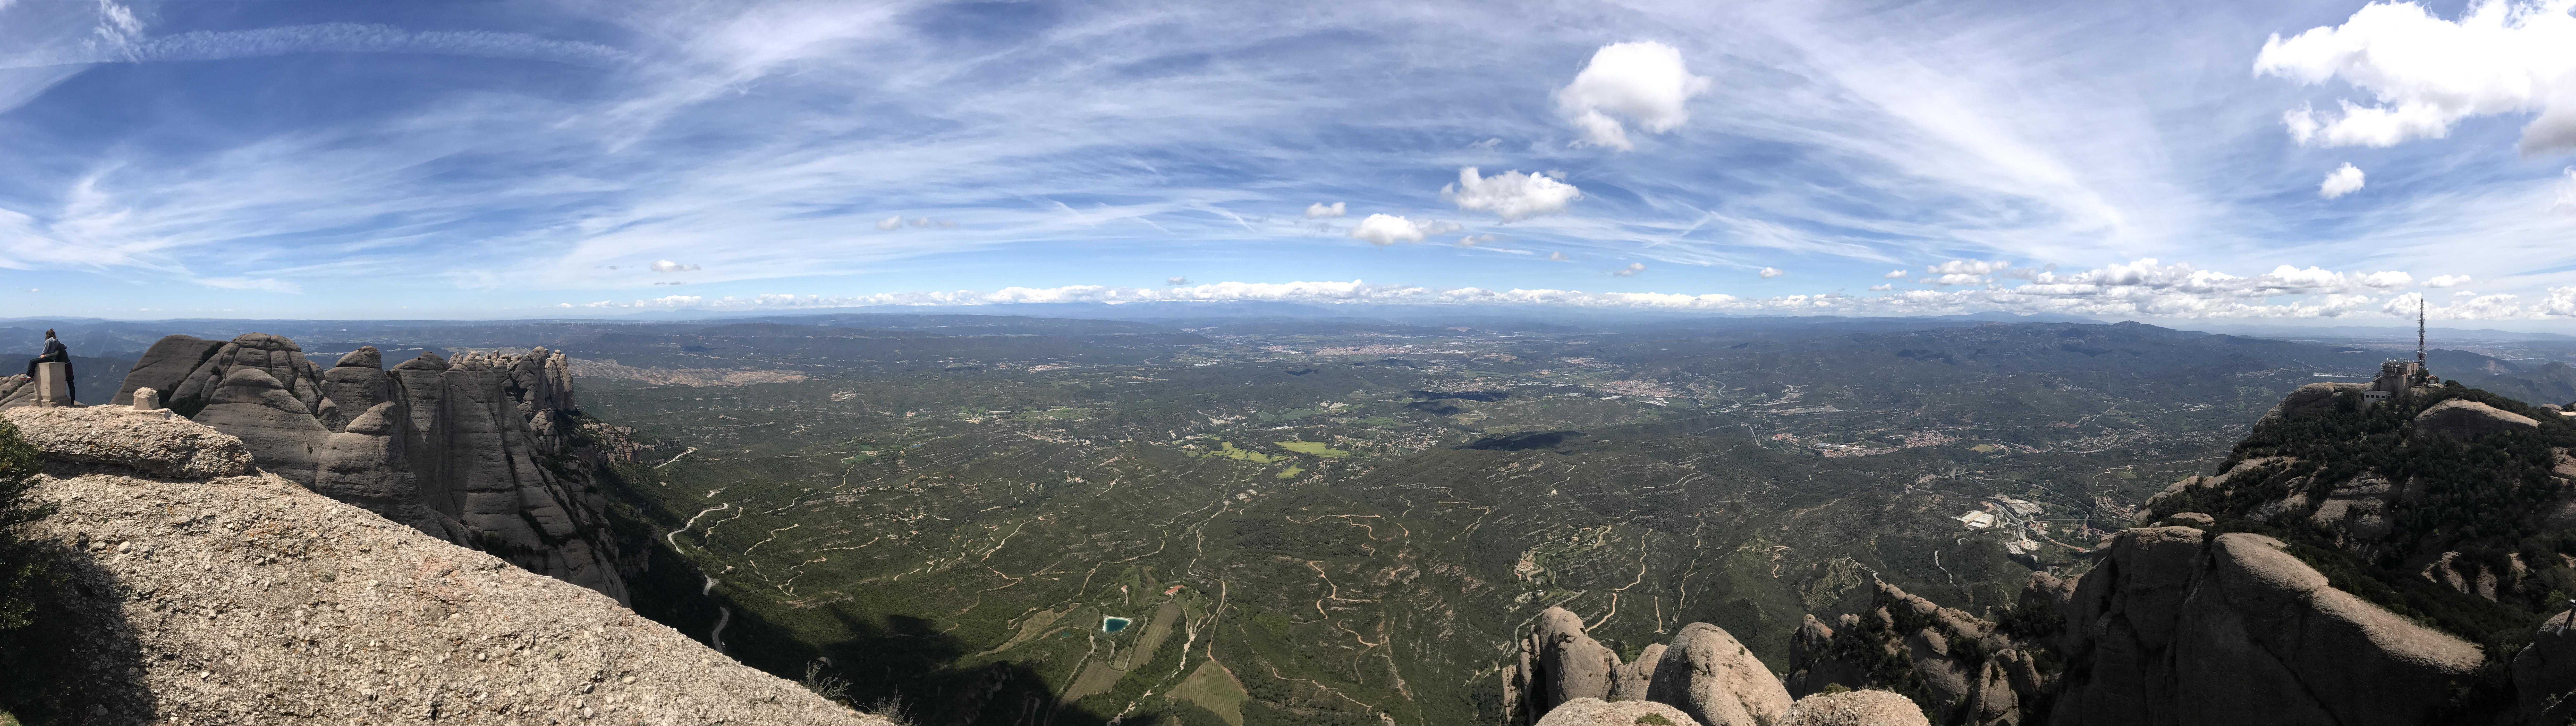 Pohled z vrcholu Montserrat